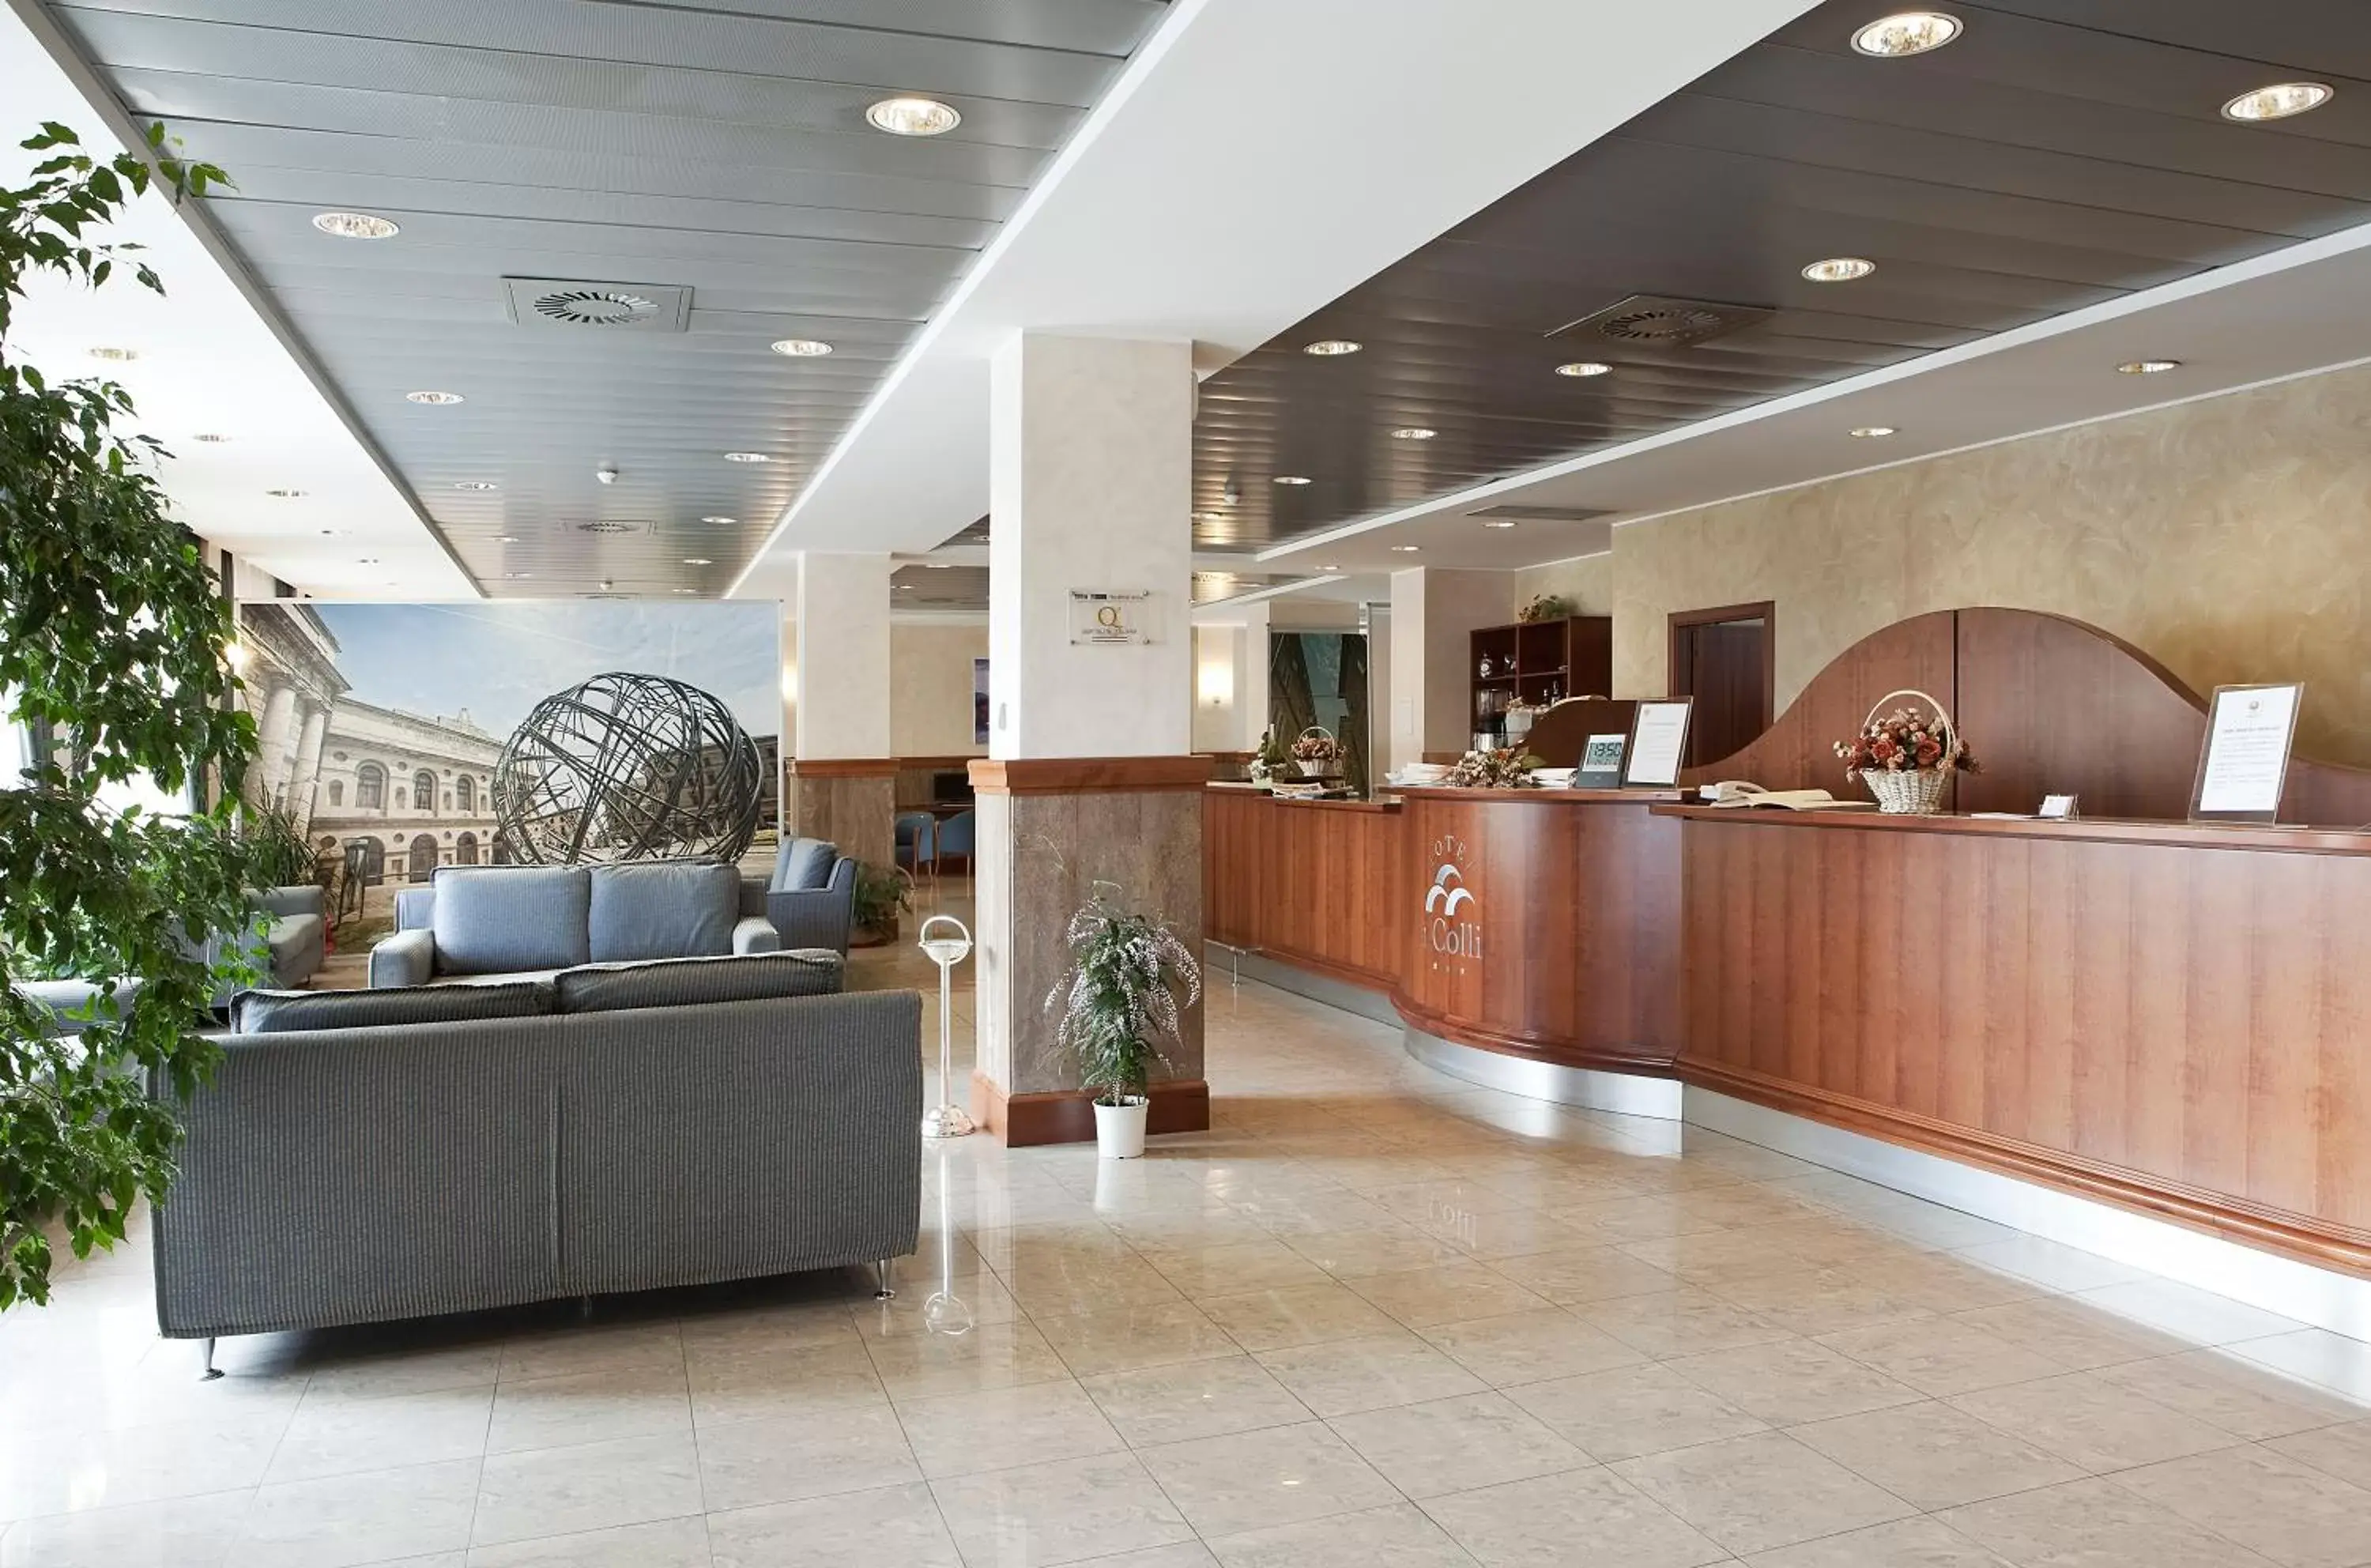 Lobby or reception, Lobby/Reception in Best Western Hotel I Colli